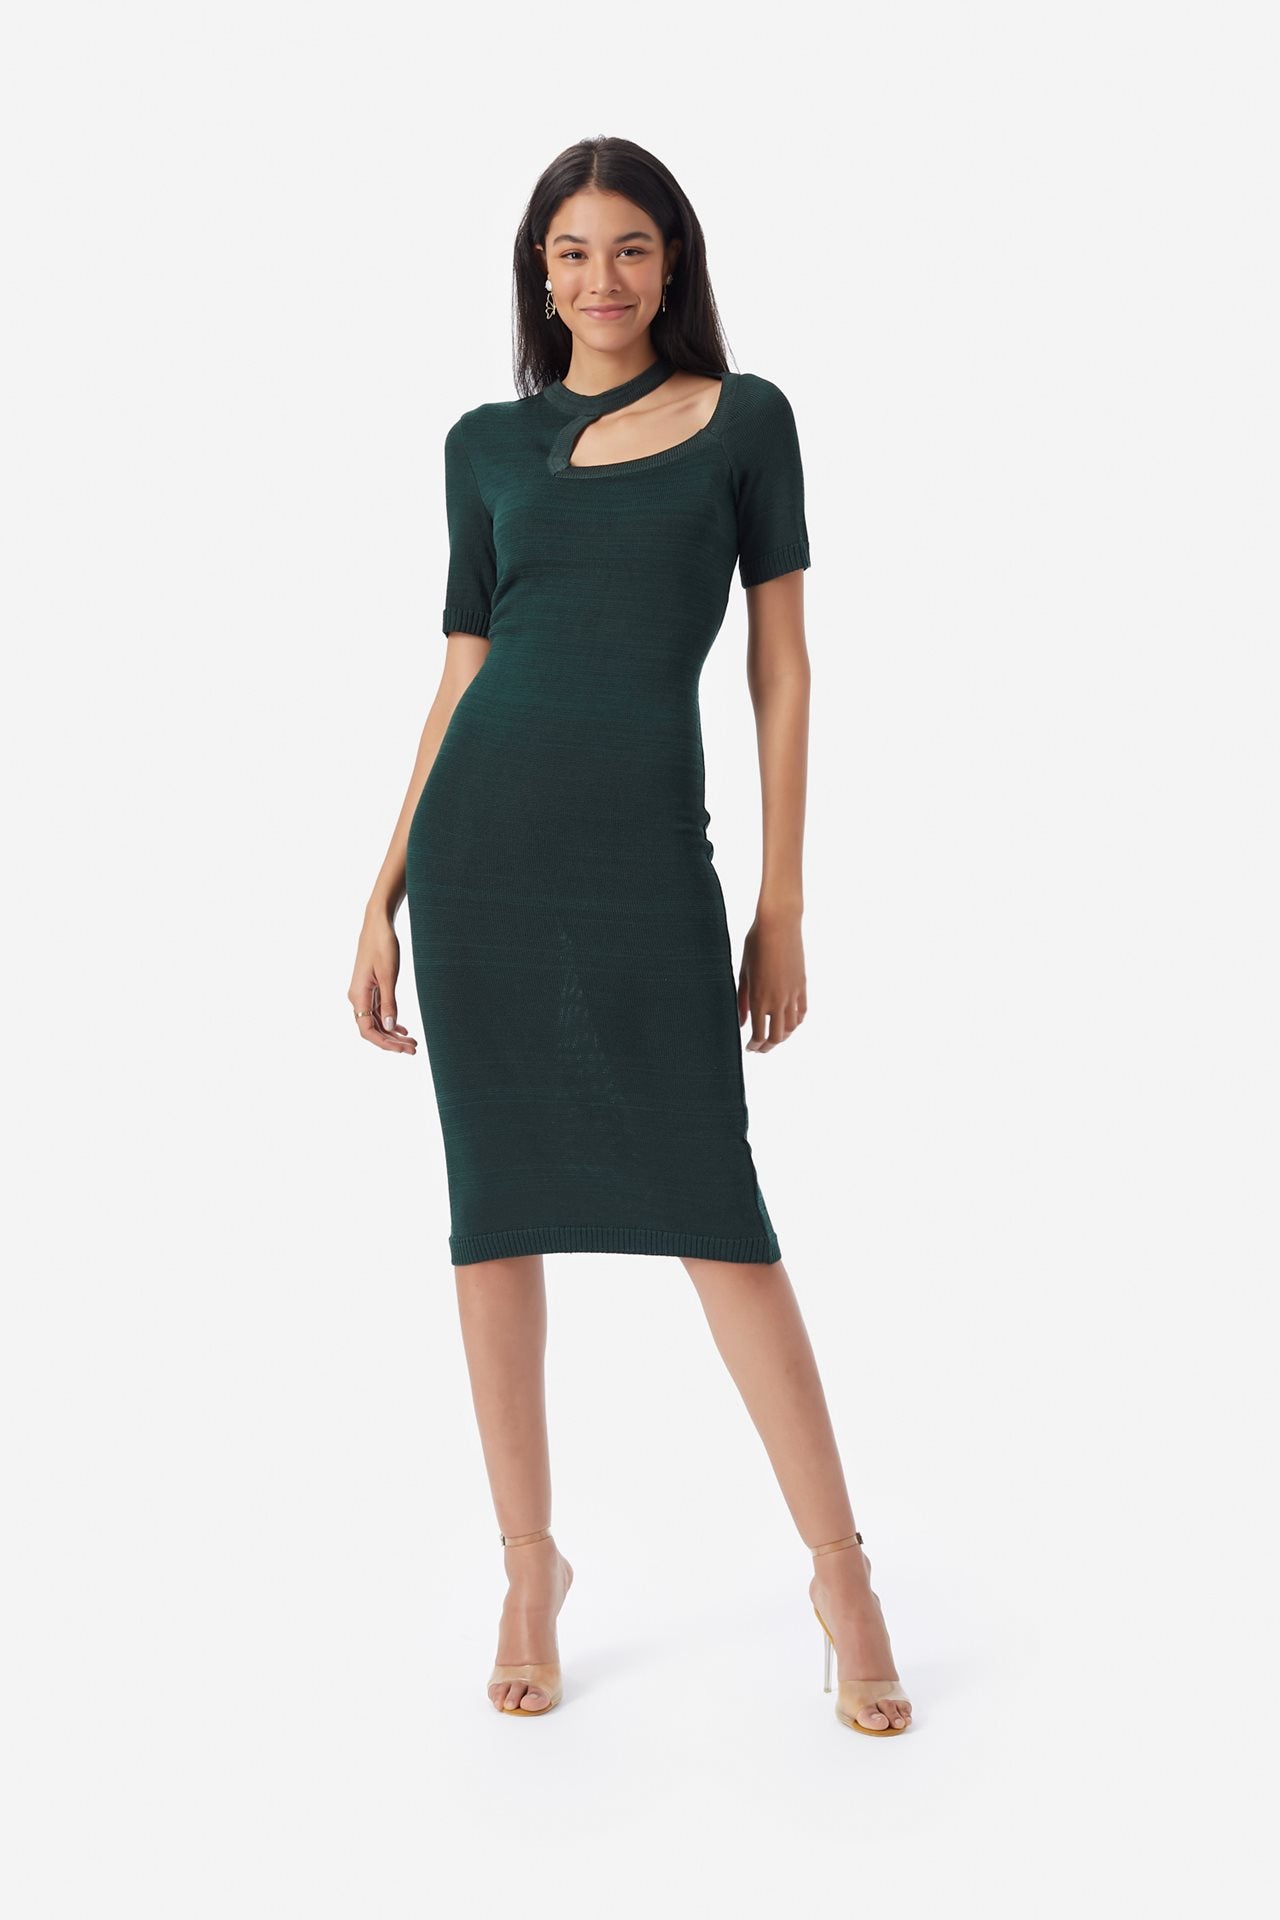 Short Sleeve Knit Dress Women Dresses Tiyi X-Small Green 